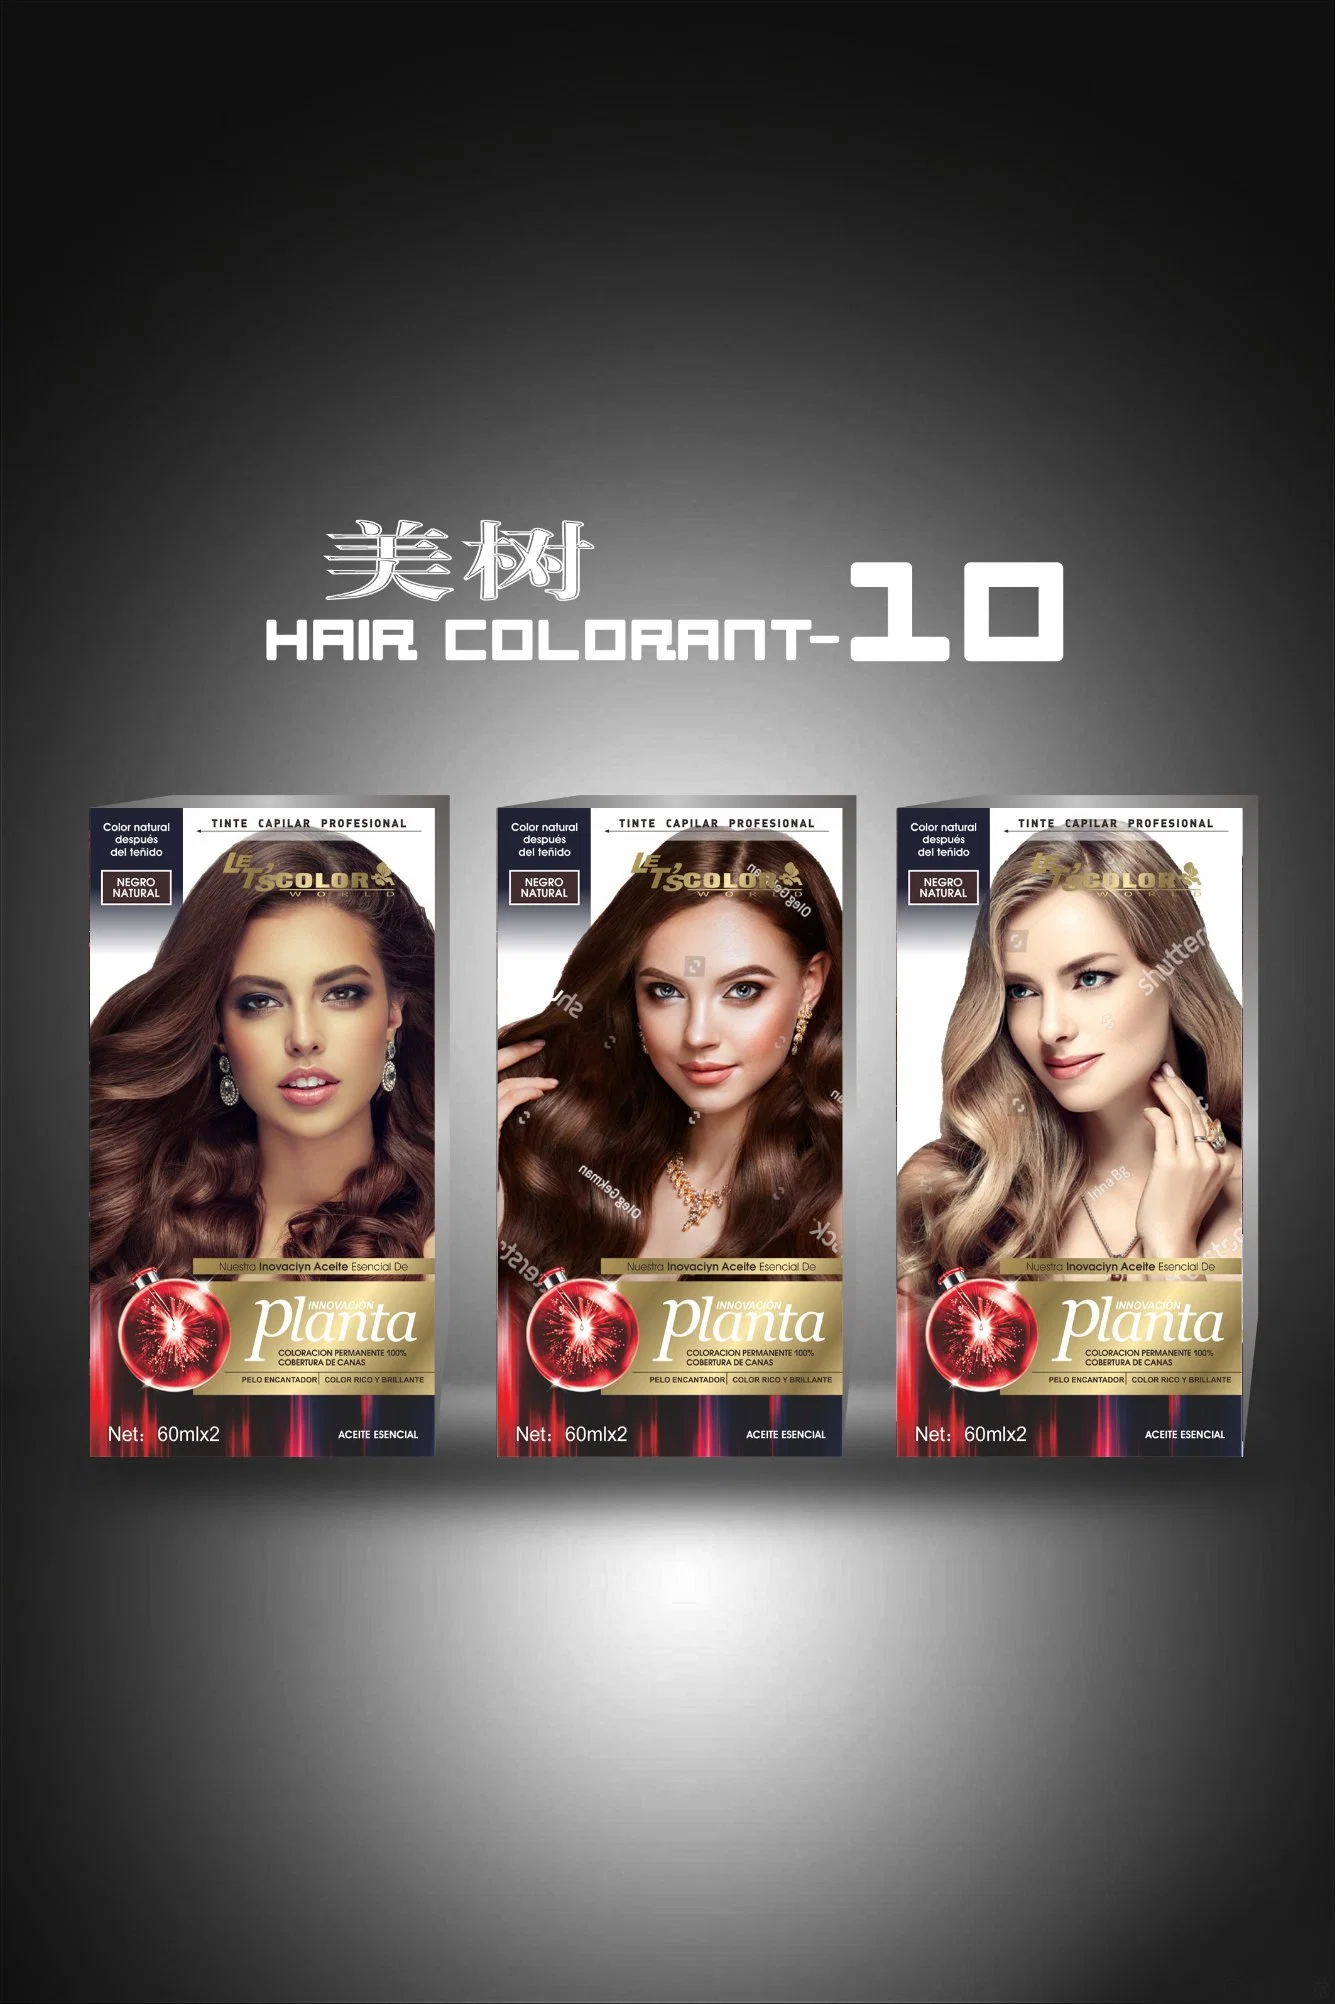 علامة خاصة أفضل بيع الشعر صبغة الشعر الشعر العضوية الدائمة لون كريم مع ألوان شائعة